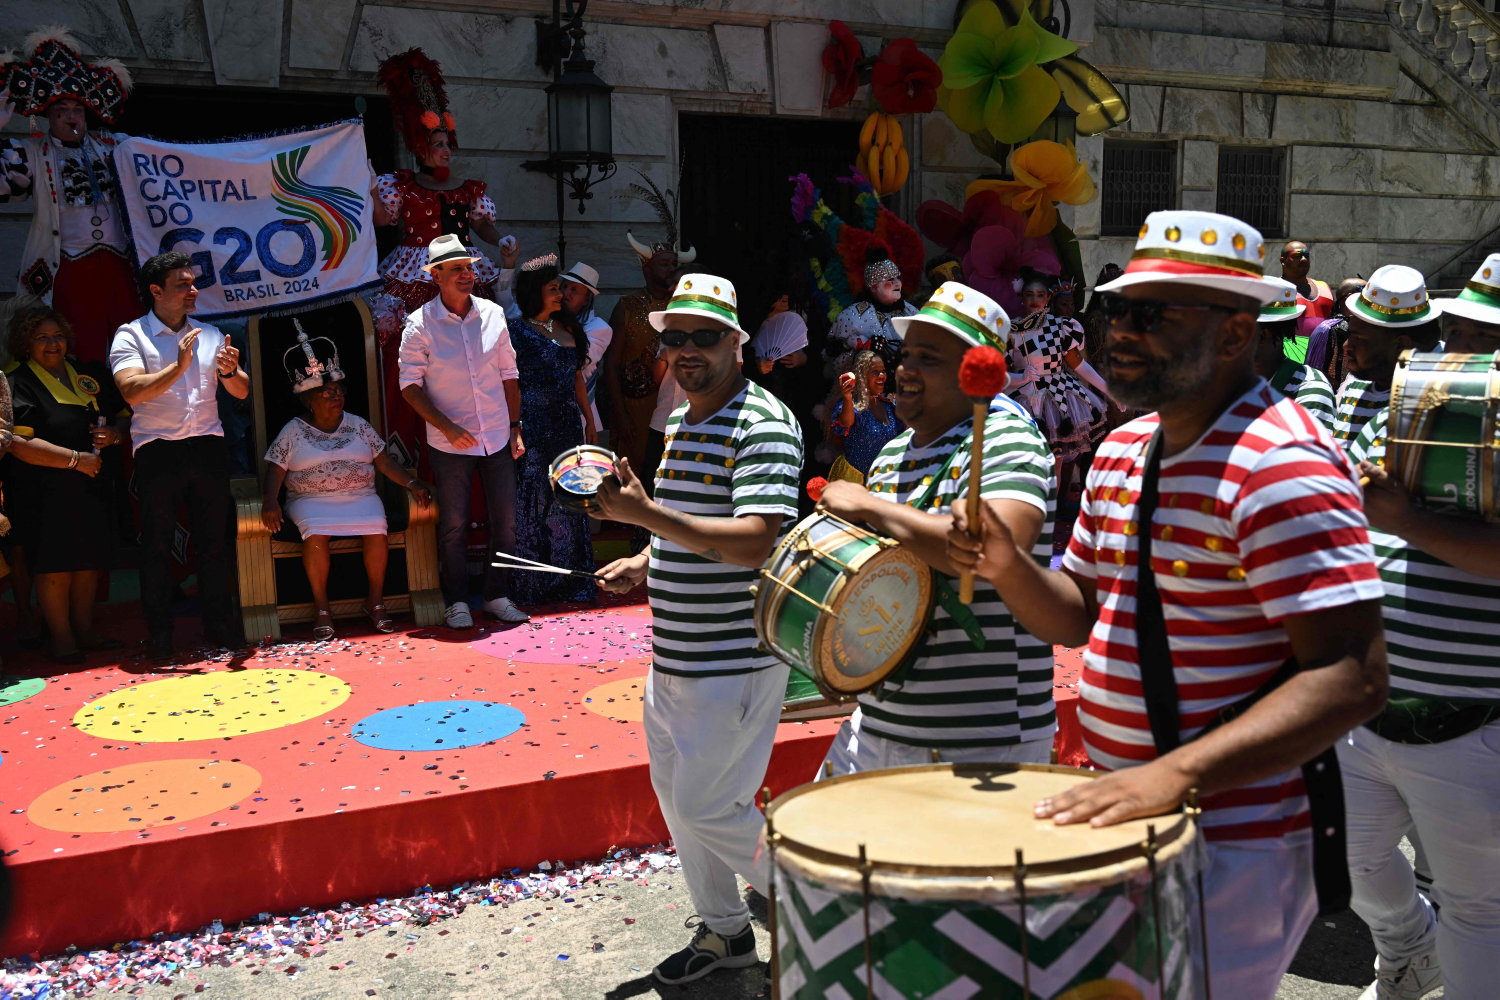 amazon, parader ved karneval i rio de janeiro hylder oprindeligt folk